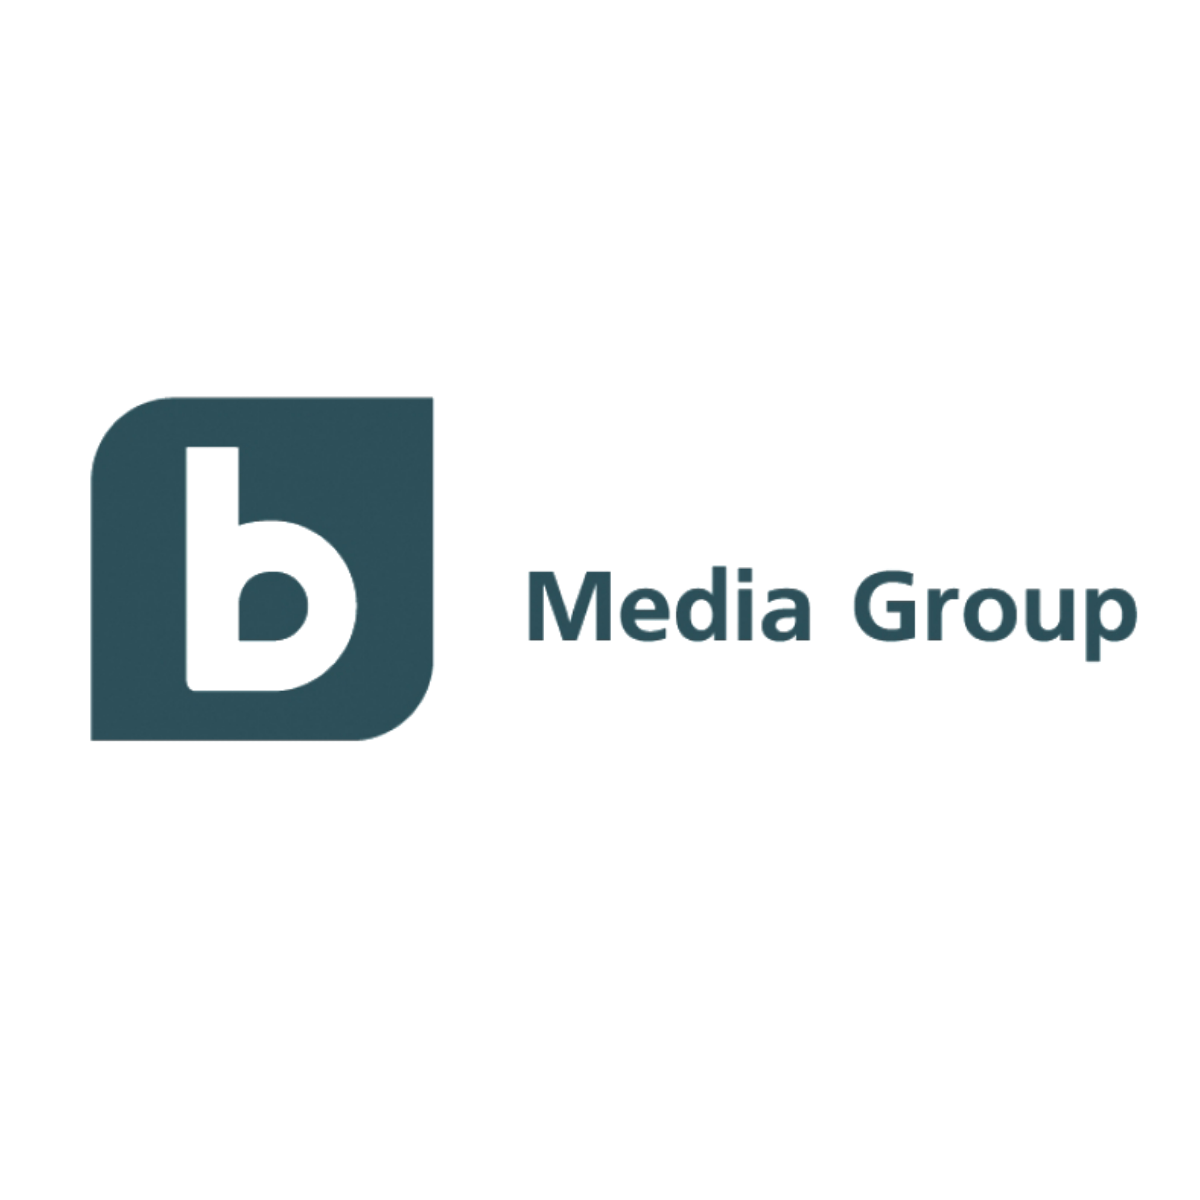 btv_media_group_logo